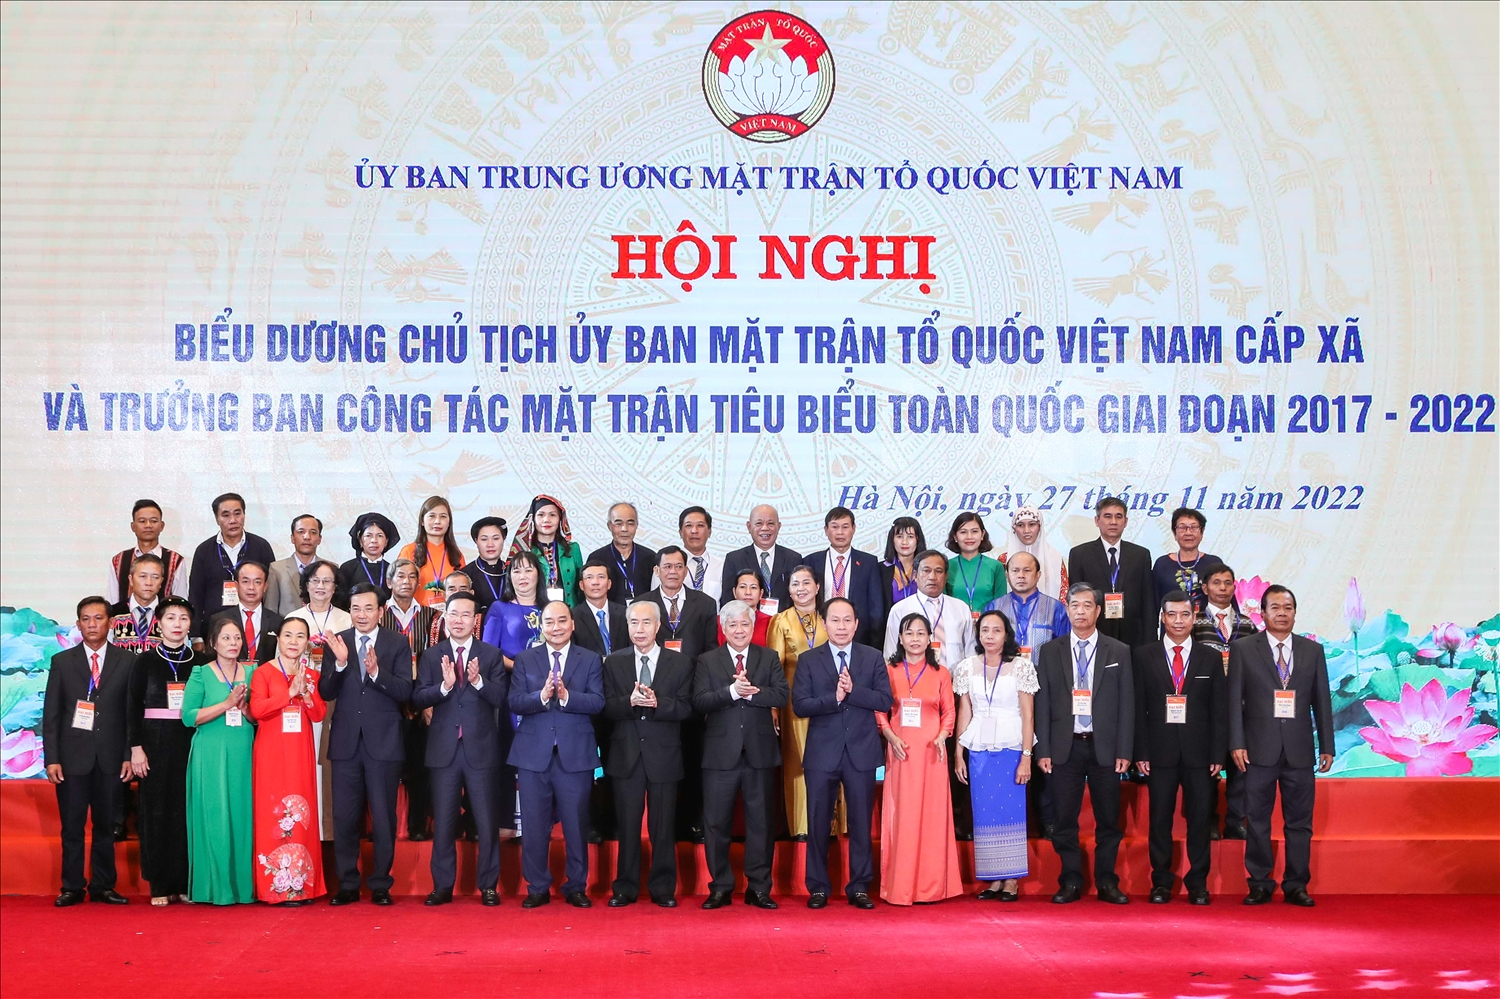 Lãnh đạo Đảng, Nhà nước, Ủy ban Trung ương MTTQ Việt Nam chụp ảnh lưu niệm cùng các đại biểu tại Hội nghị biểu dương